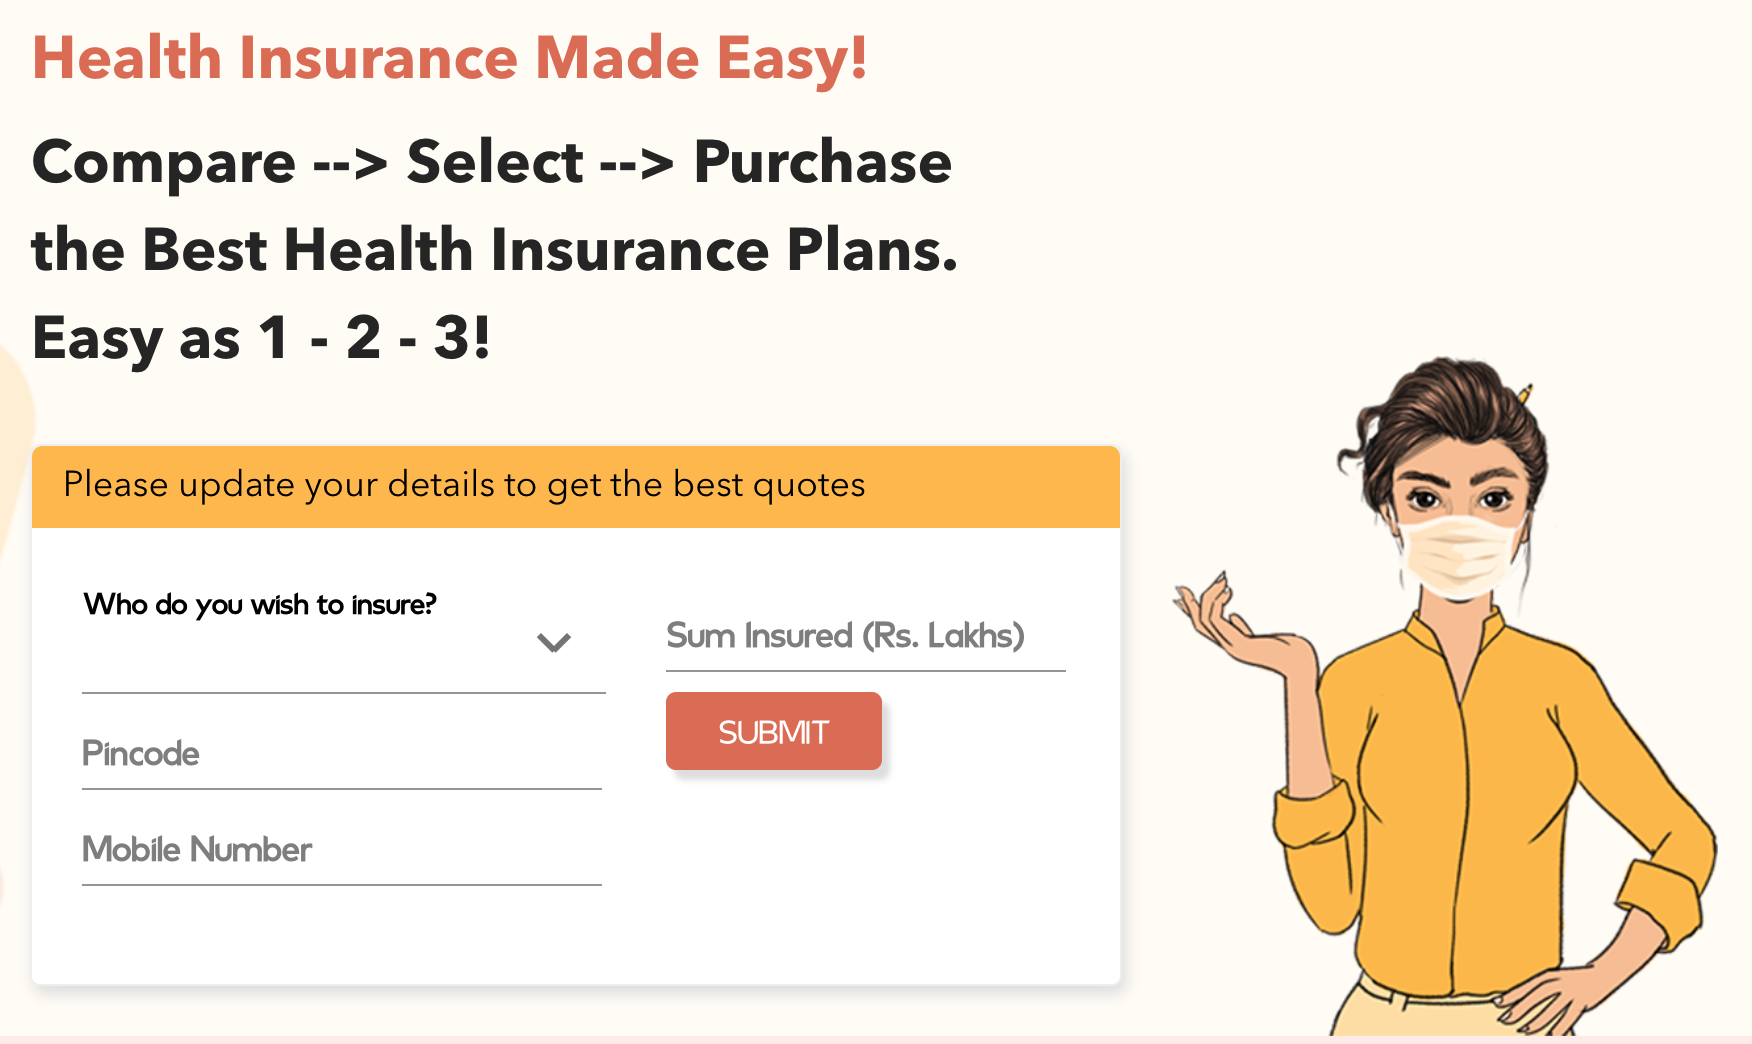 SANA.Check health insurance made easy